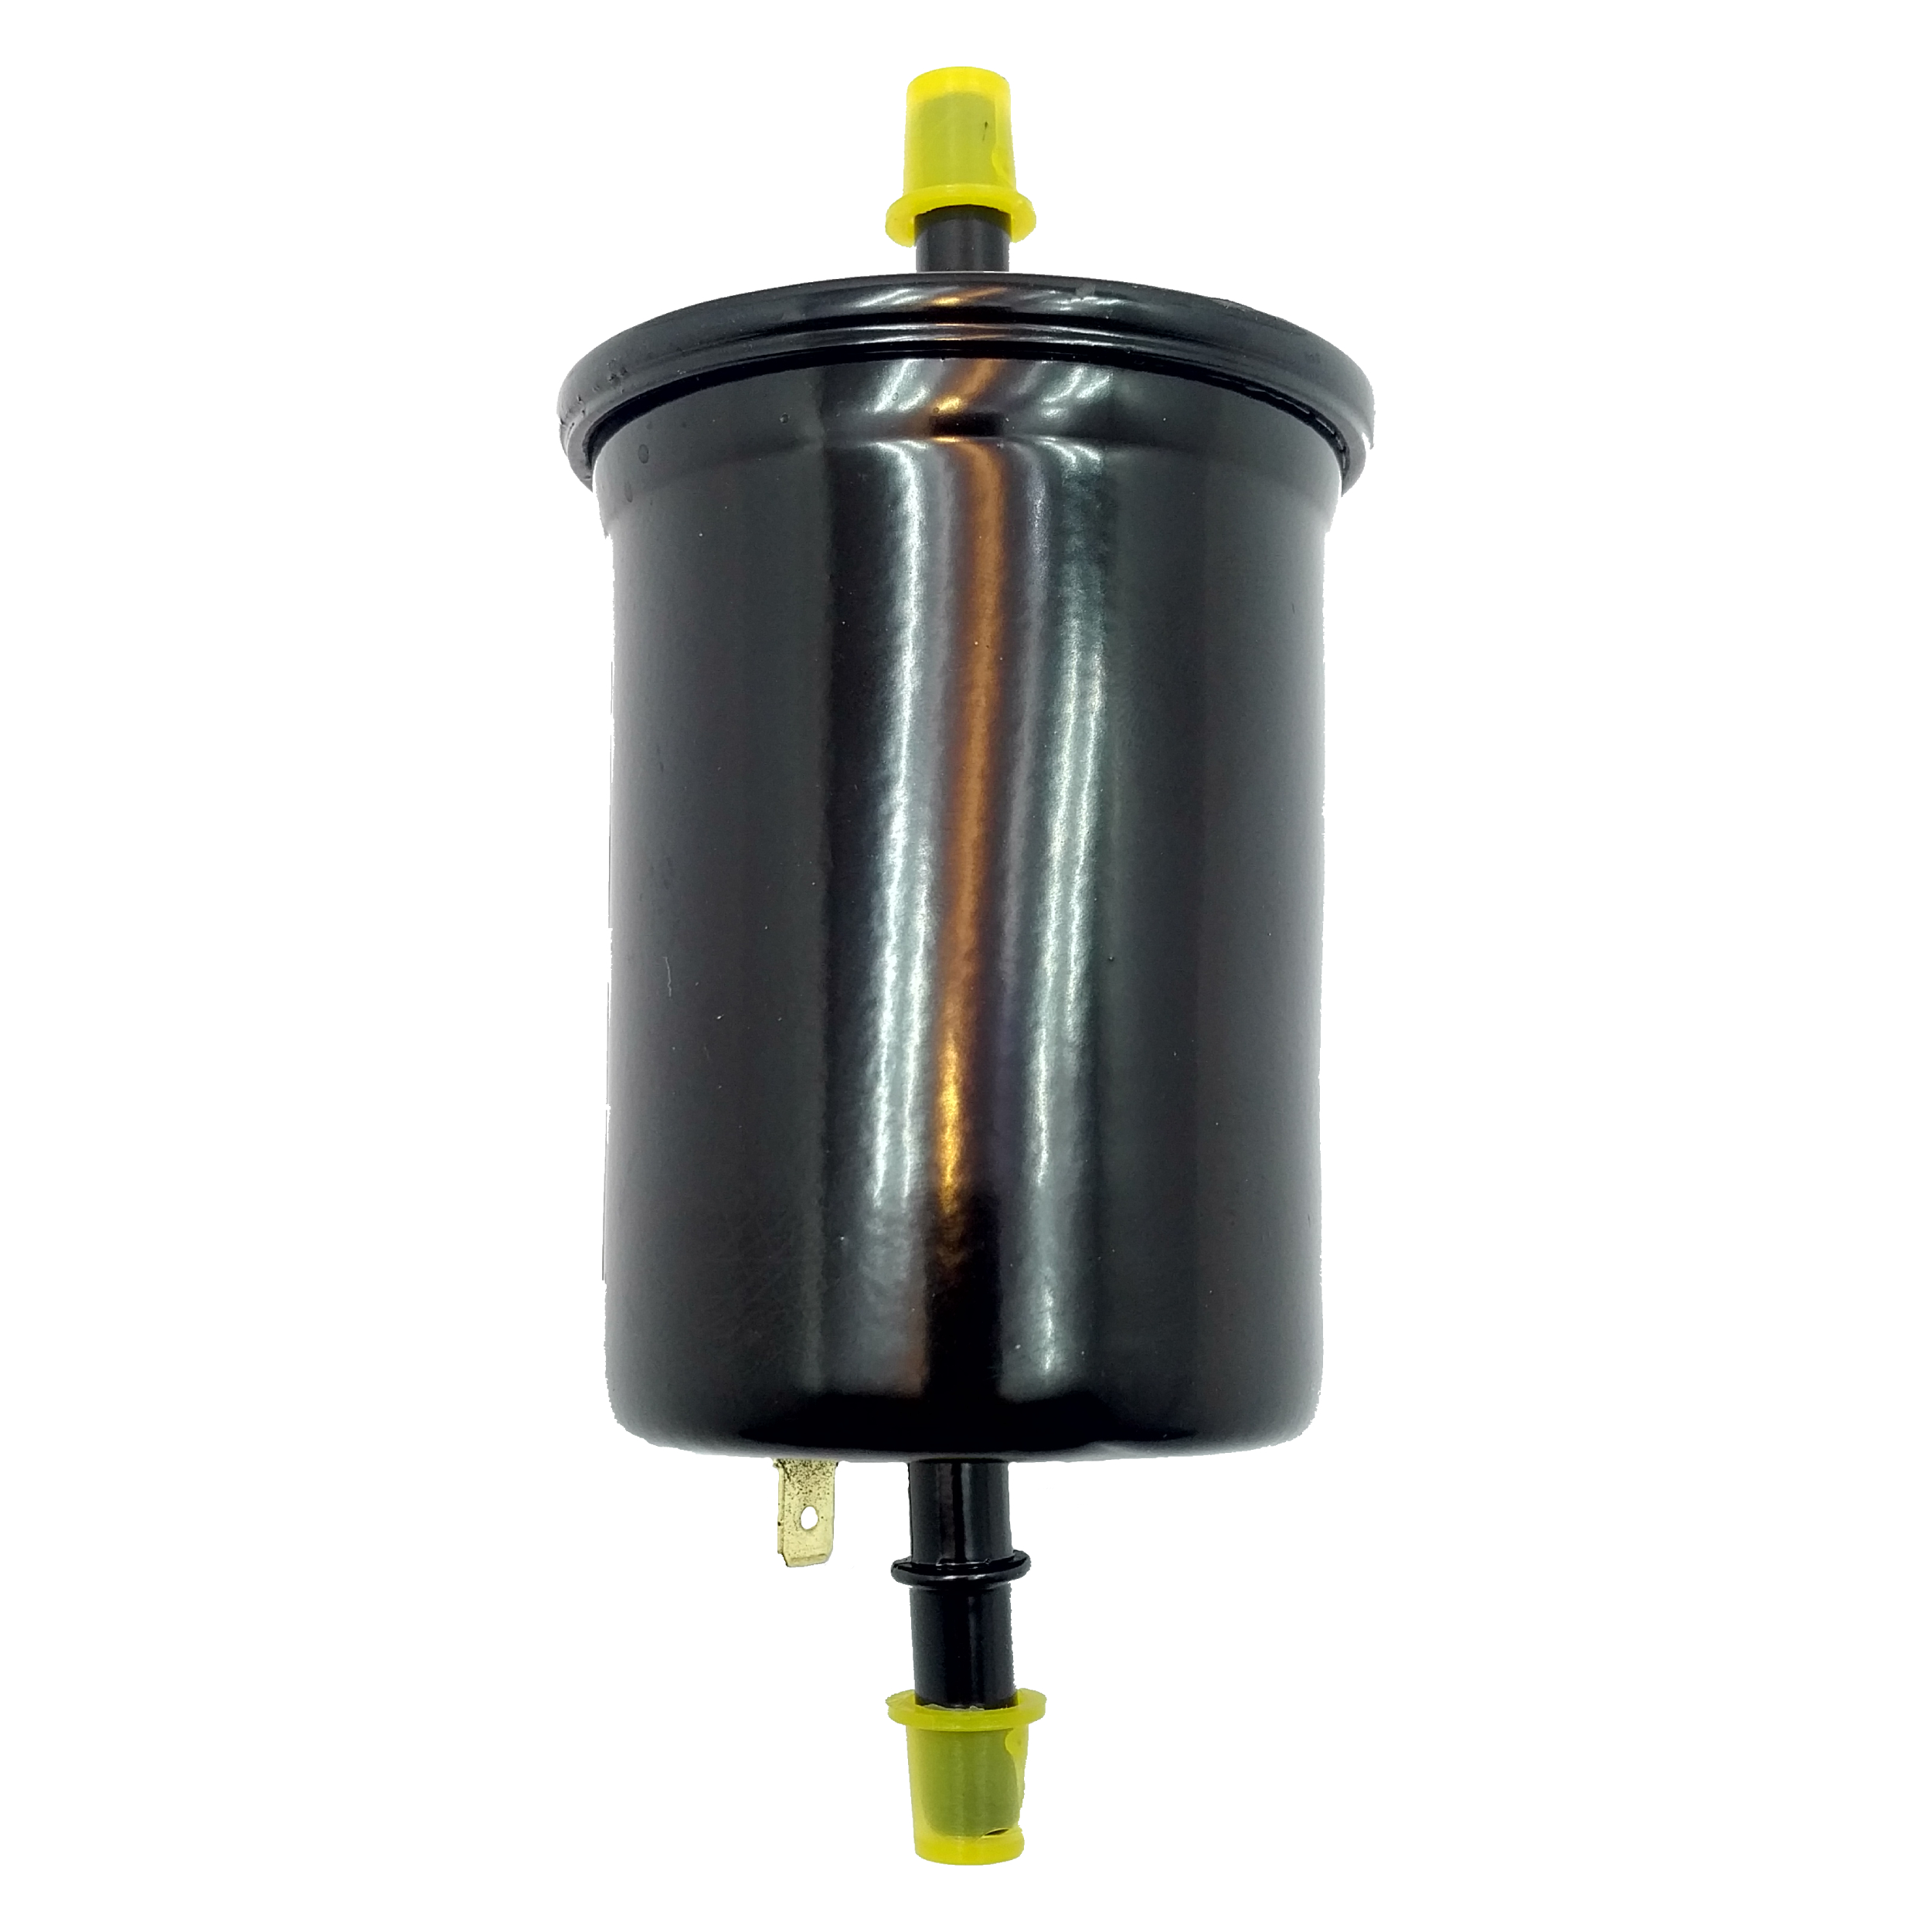  فیلتر بنزین کد T11-1117110 مناسب برای ام وی ام 530